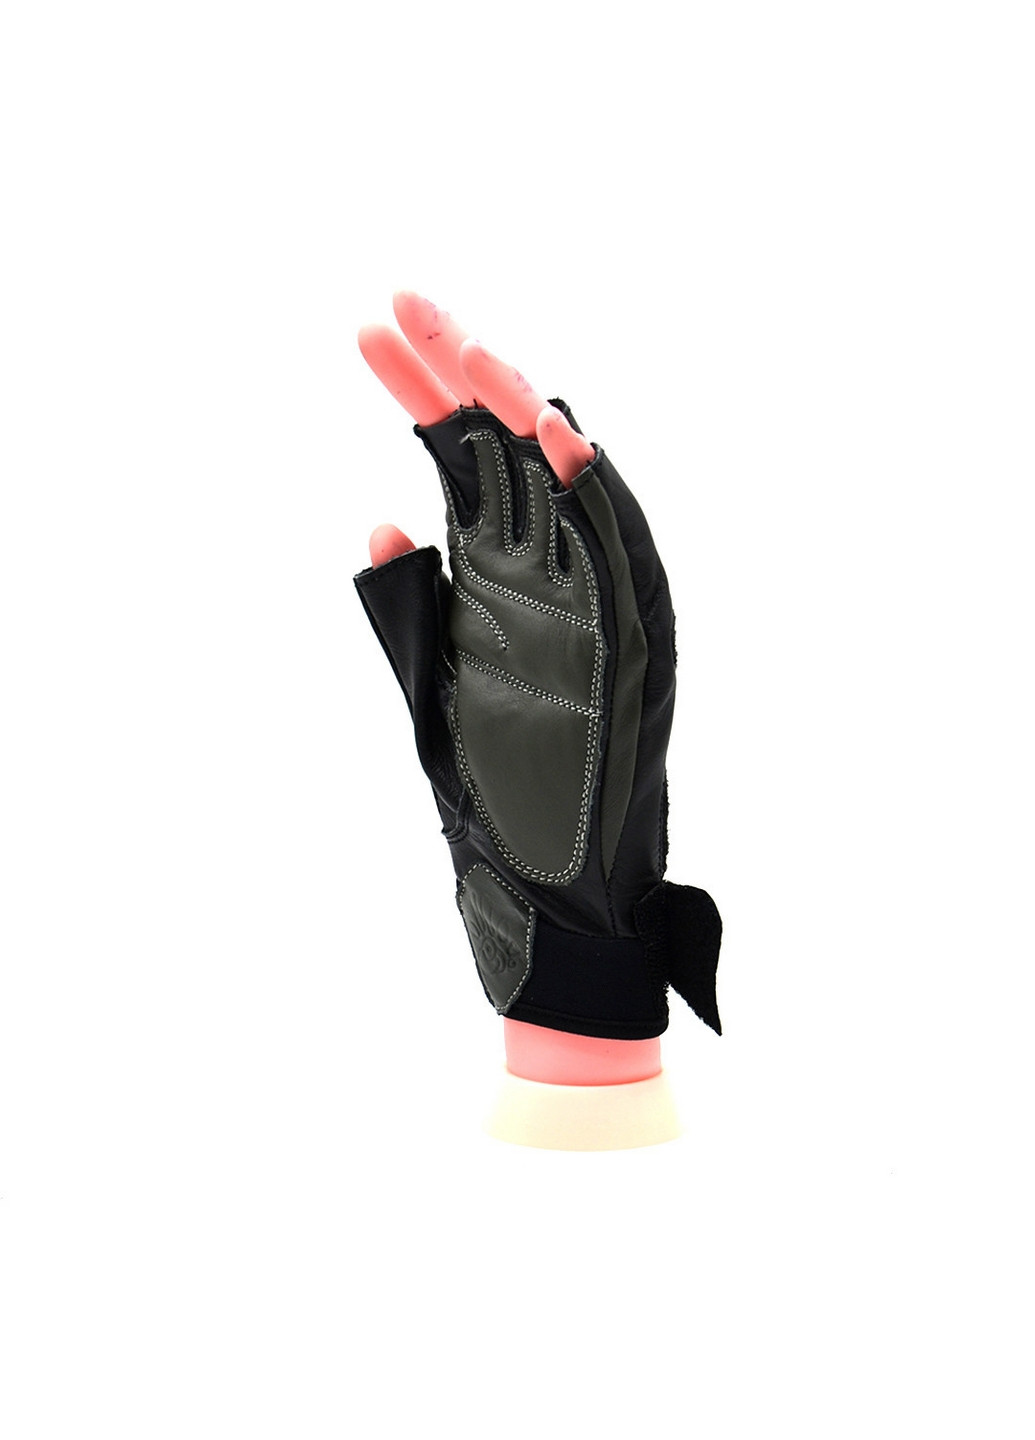 Унисекс перчатки для фитнеса M Mad Max (267656605)